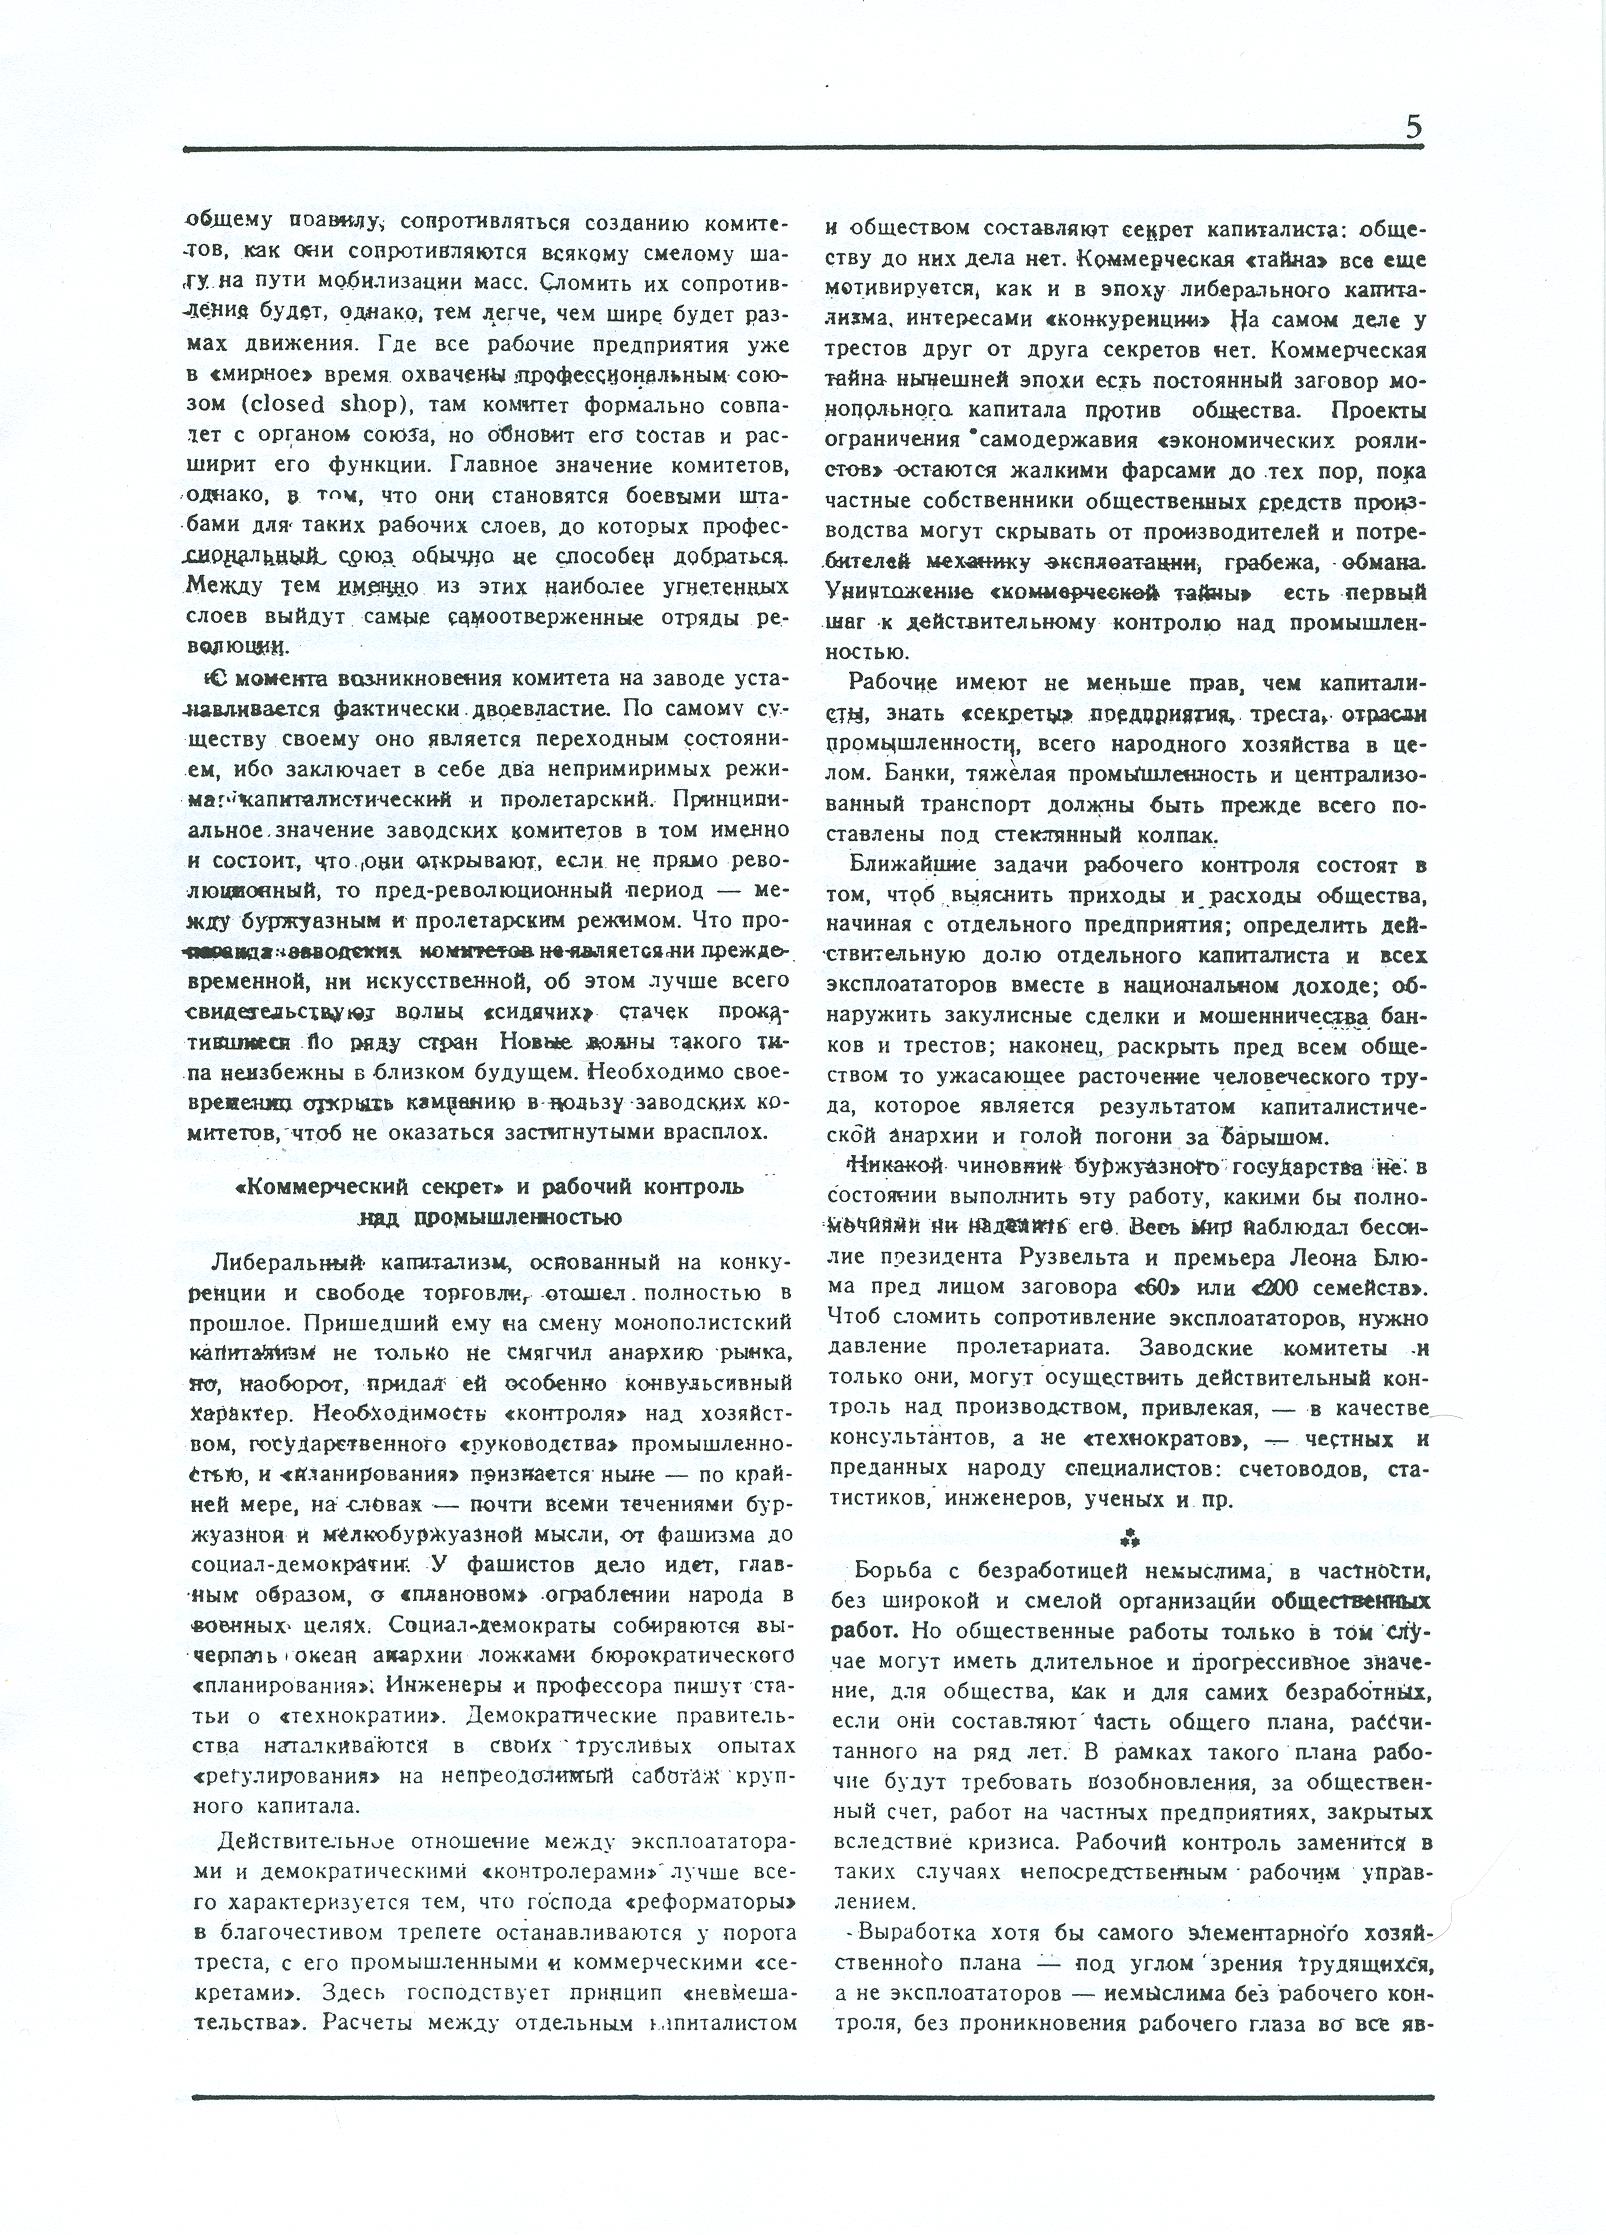 Dagli archivi del bolscevismo n. 1 (marzo 1986) - pag. 5